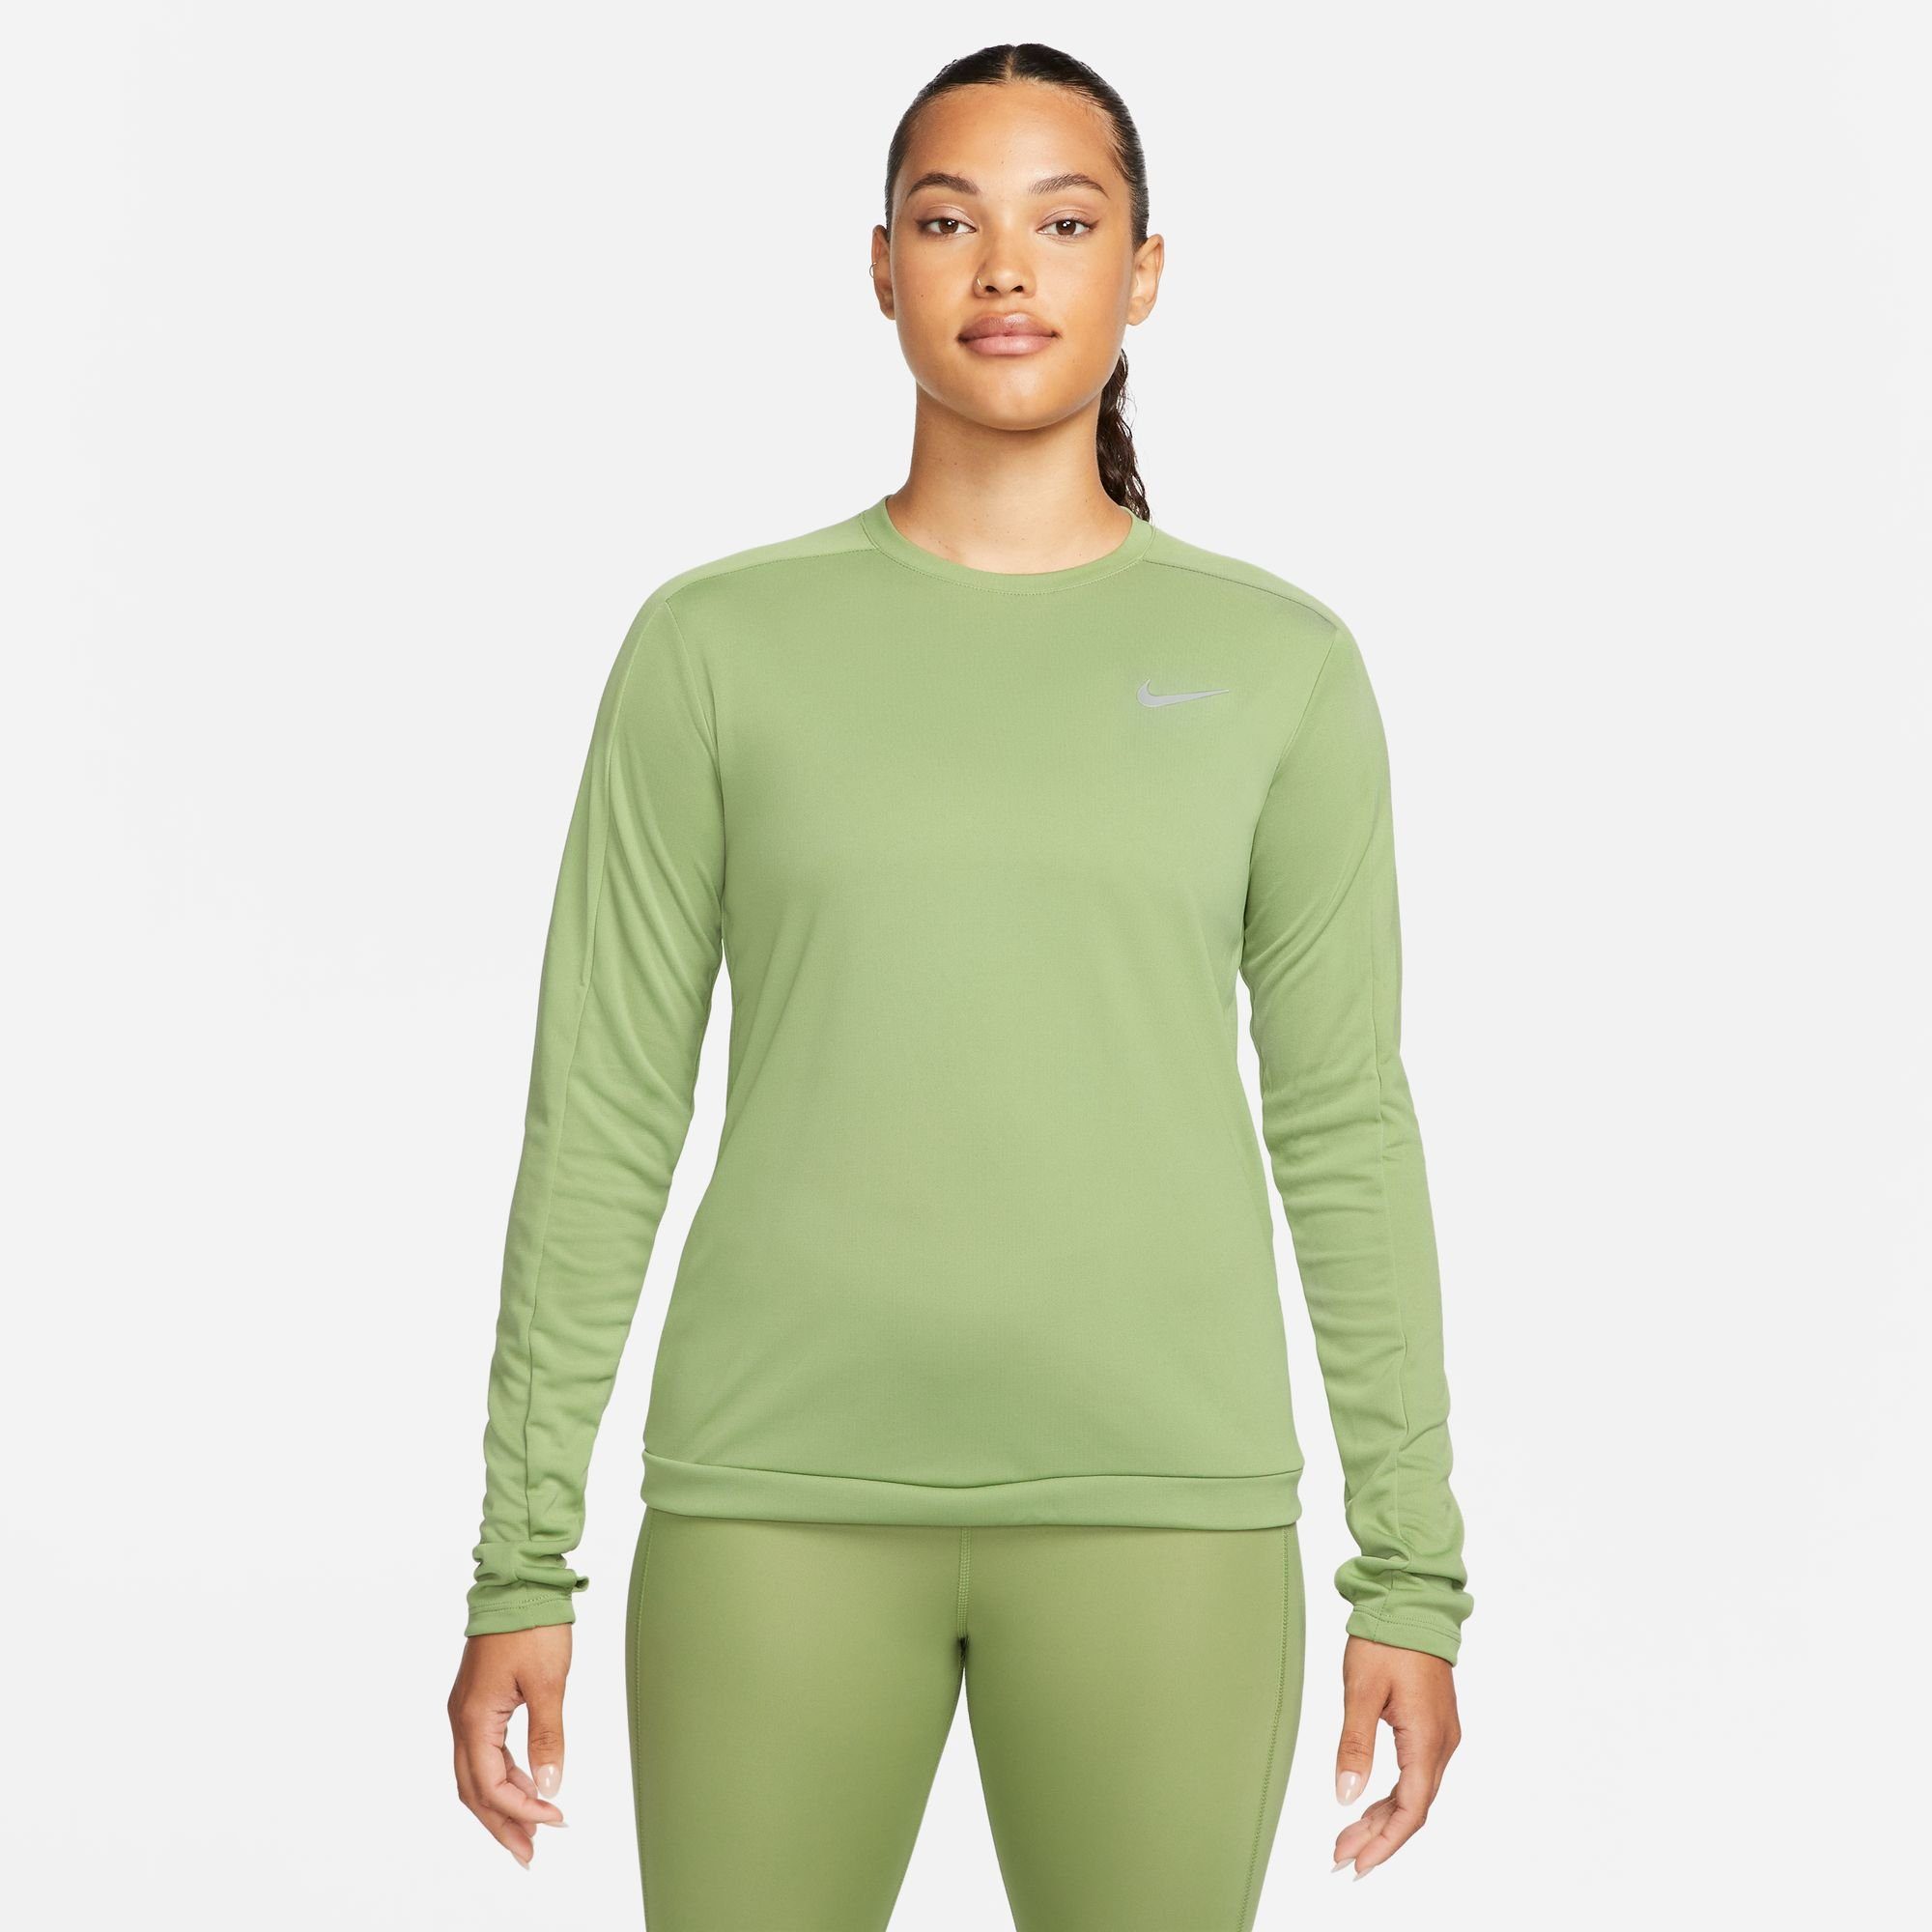 Neueste Produkte dieser Saison Nike Laufshirt DRI-FIT grün RUNNING CREW-NECK WOMEN'S TOP